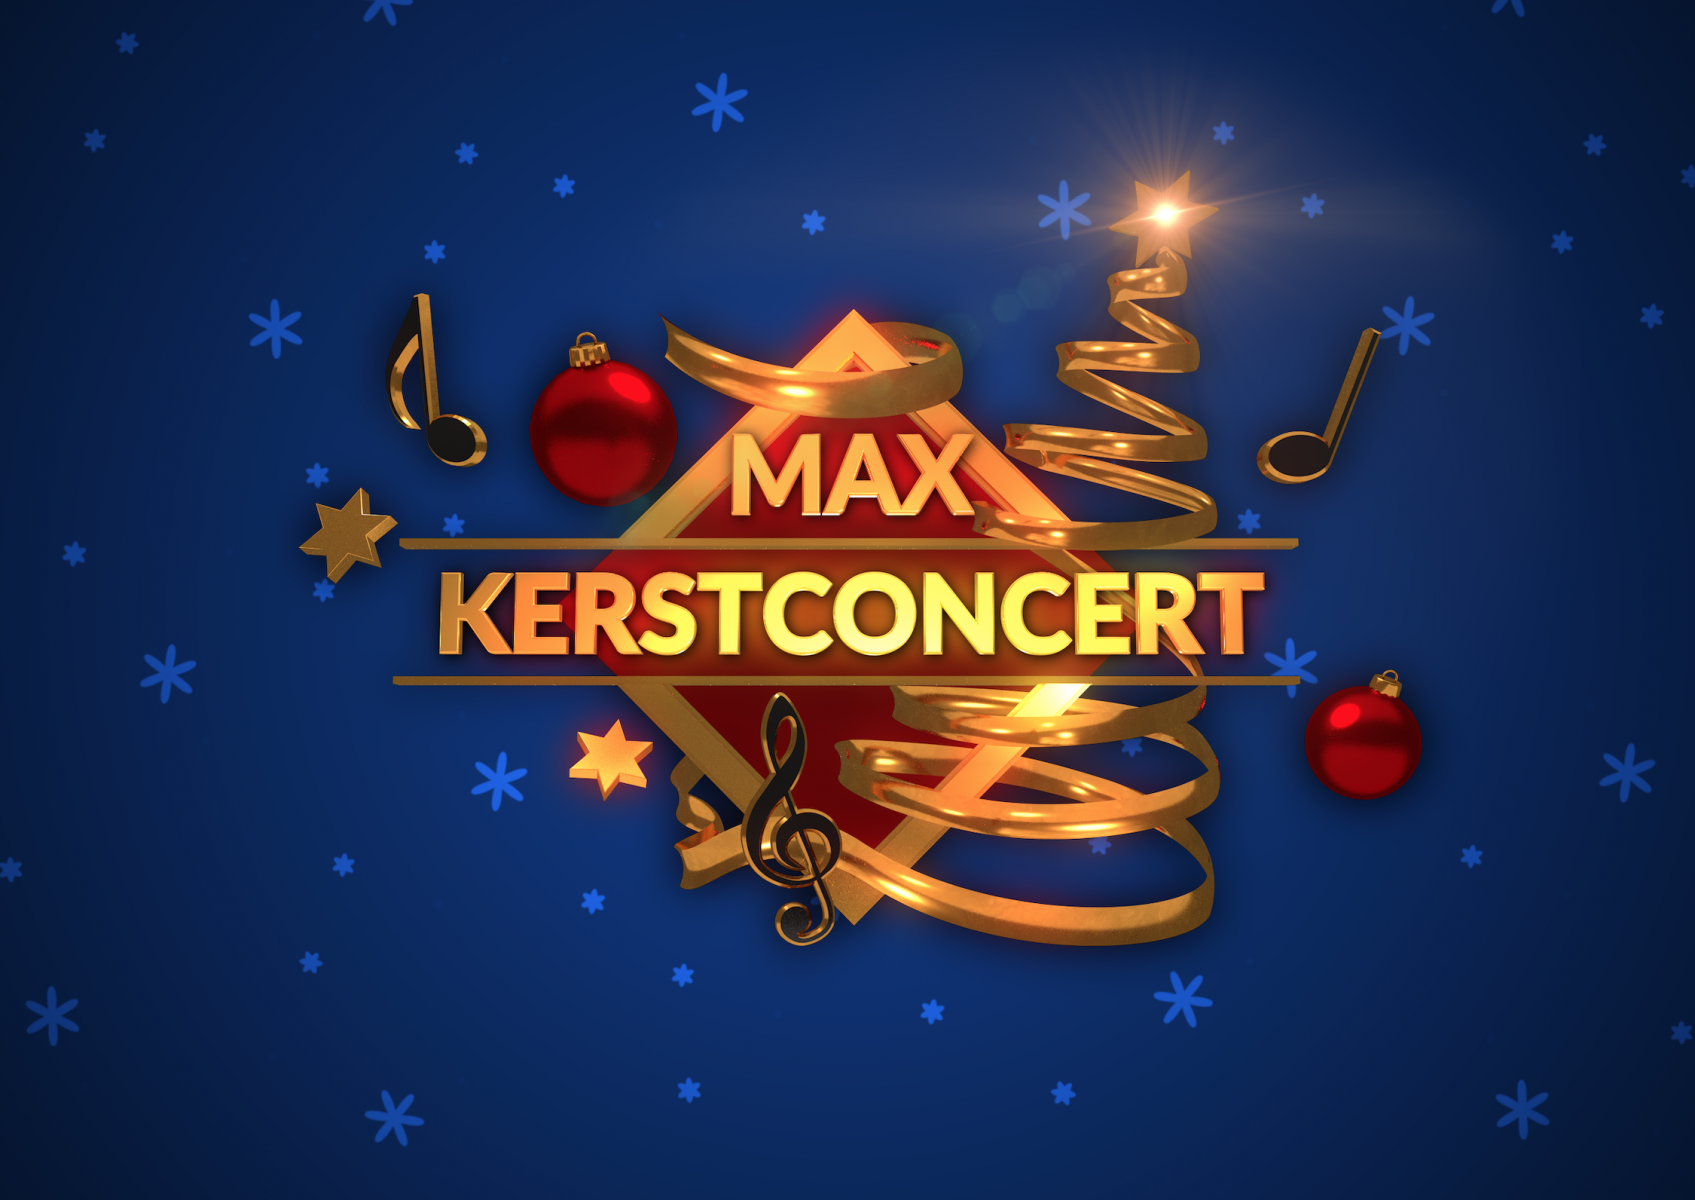 MAX Kerstconcert: genieten van muziek op eerste kerstdag